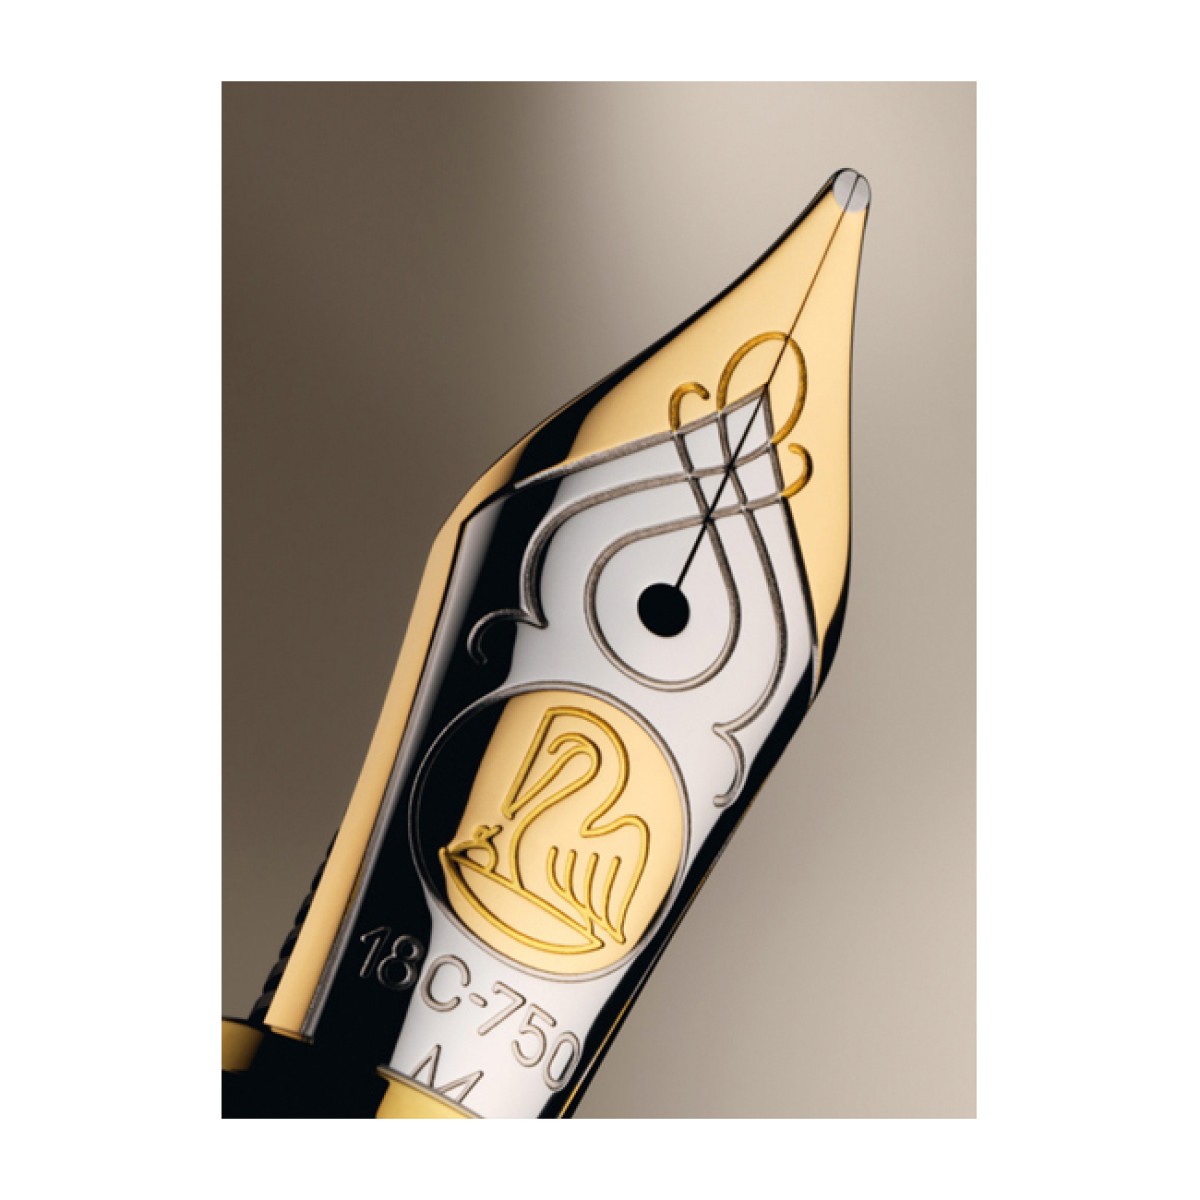 Pelikan - Souverän 800 - Black - Fountain Pen